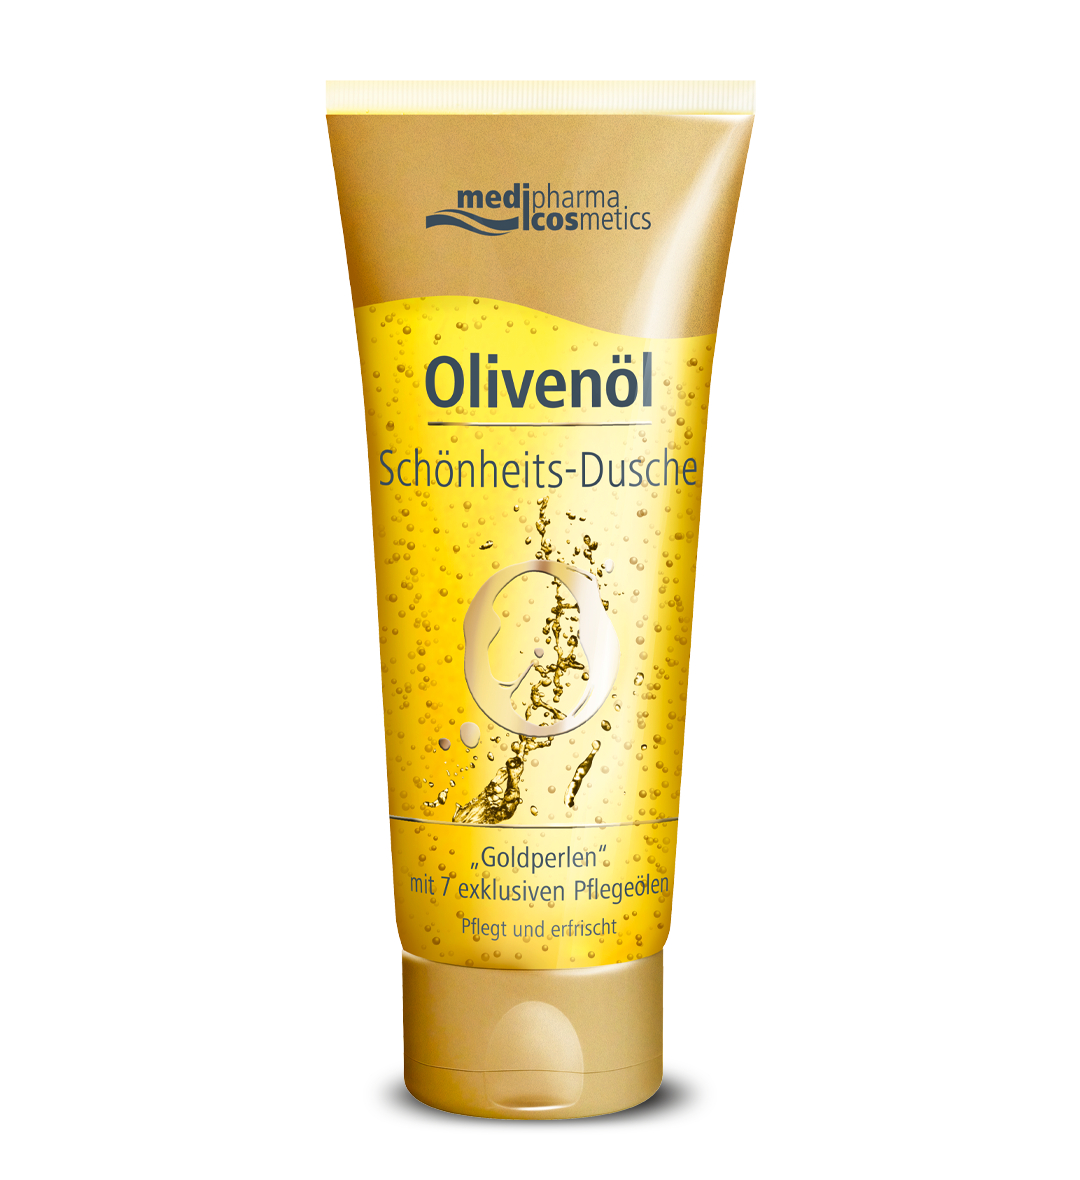 Гель для душа Medipharma Cosmetics Olivenol с 7 питательными маслами 200 мл medipharma cosmetics крем для тела olivenol 200